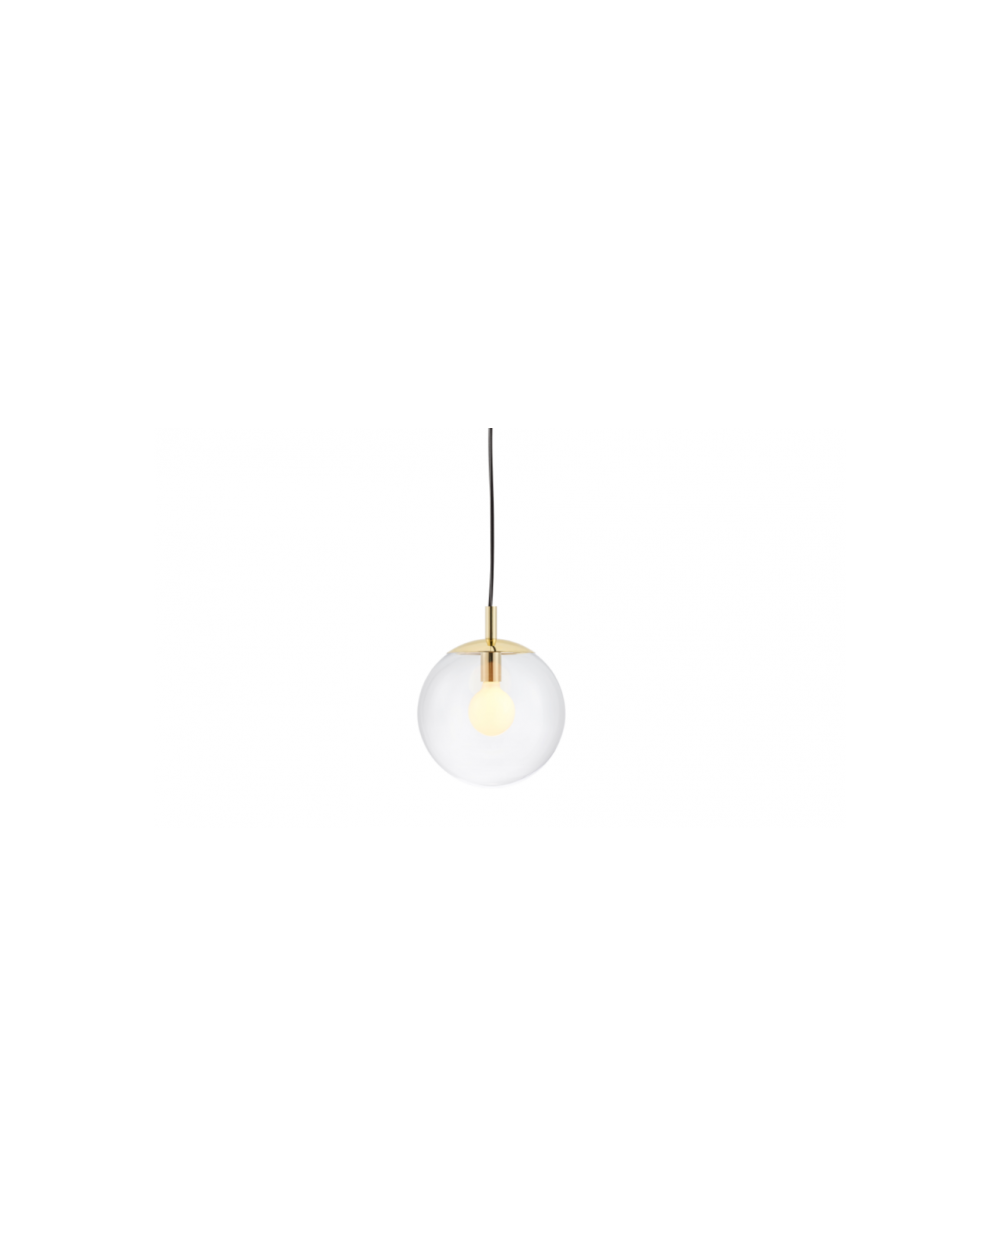 ALUR S lampa wisząca w kształcie kuli - Kaspa oprawa do wnętrz nowoczesnych i w stylu retro